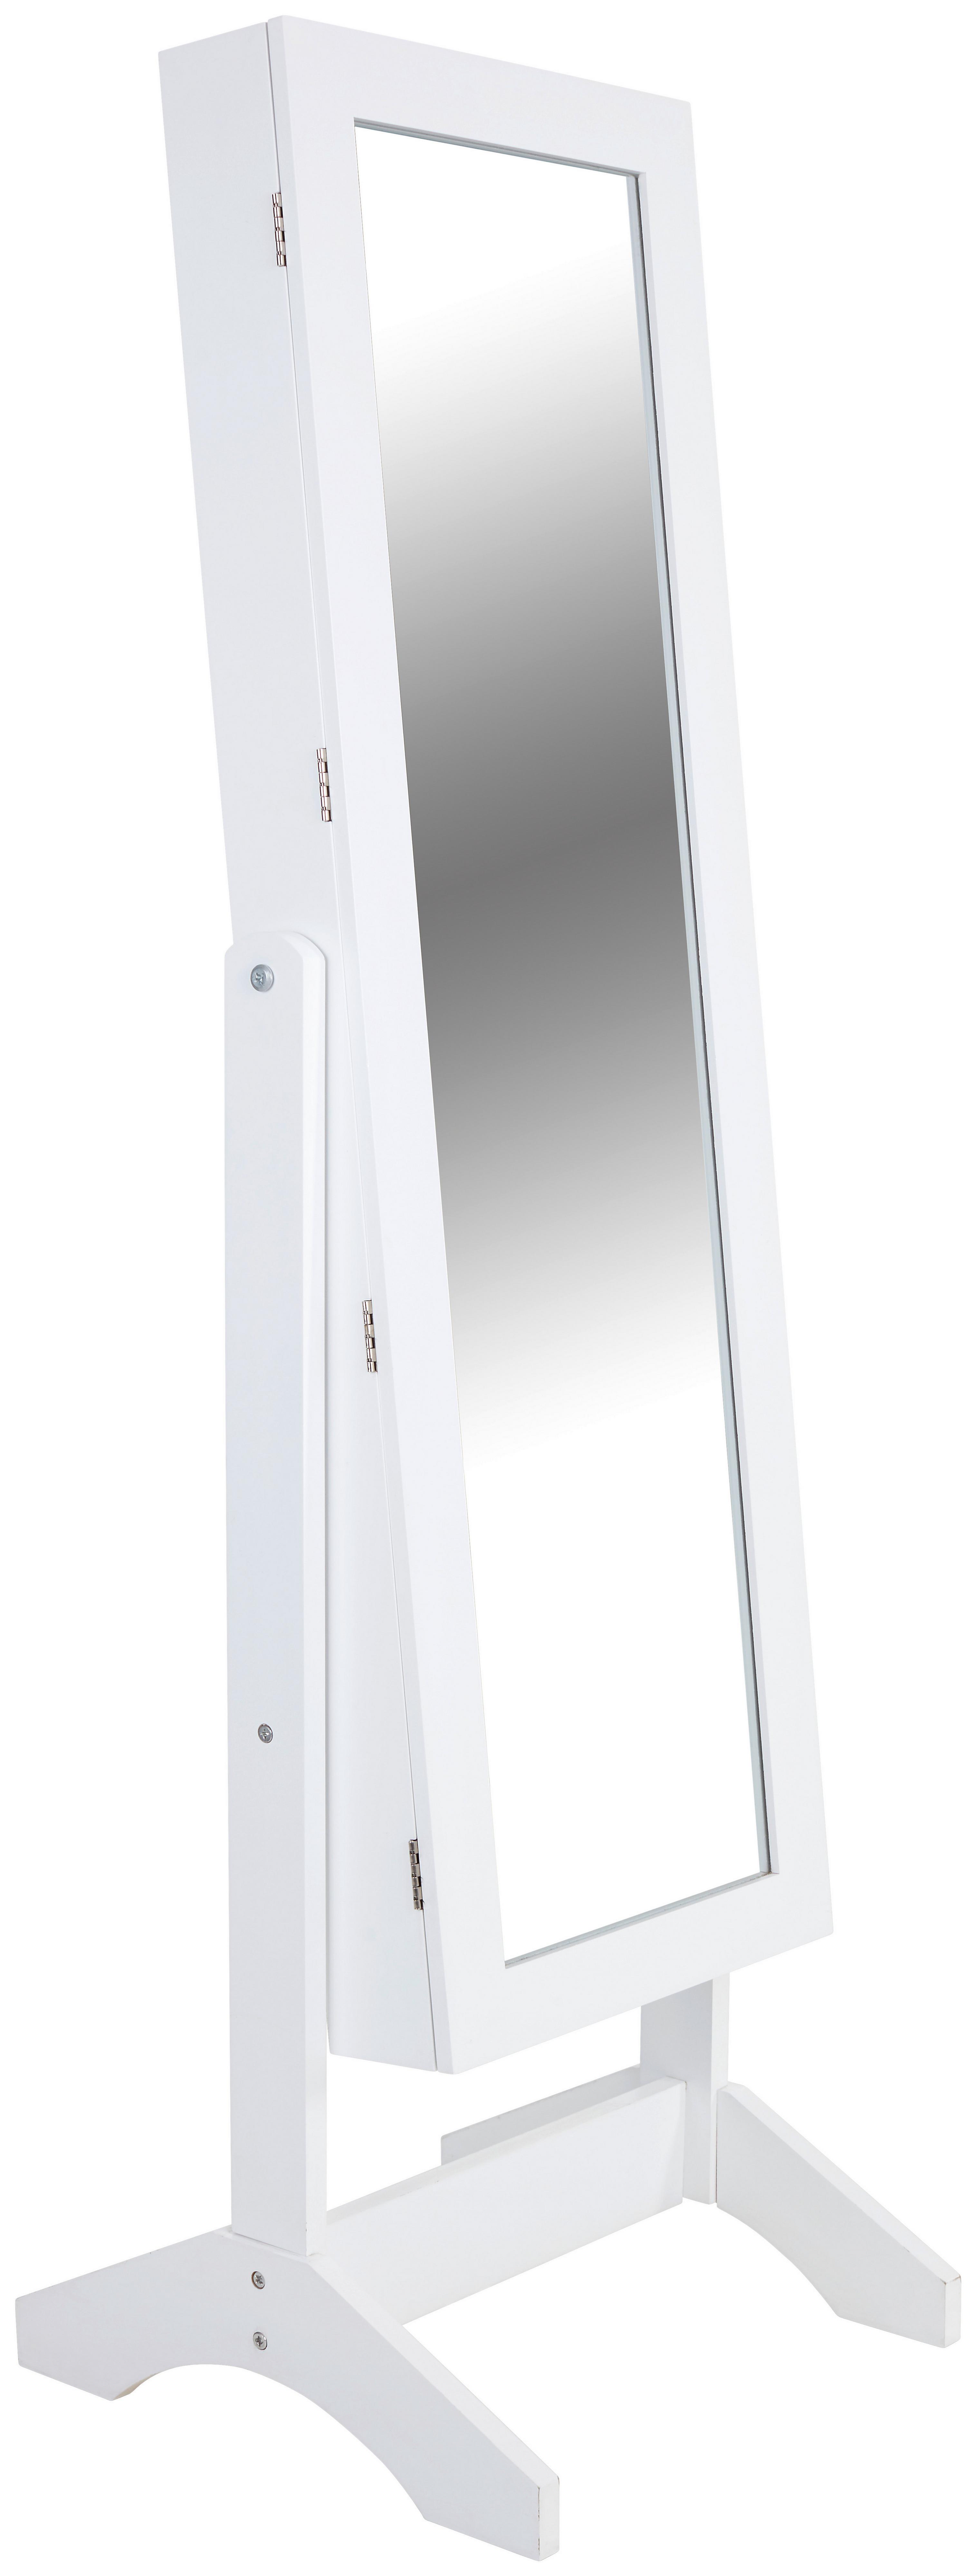 LUXFURNI Schmuckschrank mit spiegel weiss Wandmontage/Tür hängend Weiß Organizer mit Schubladen abschließbar 